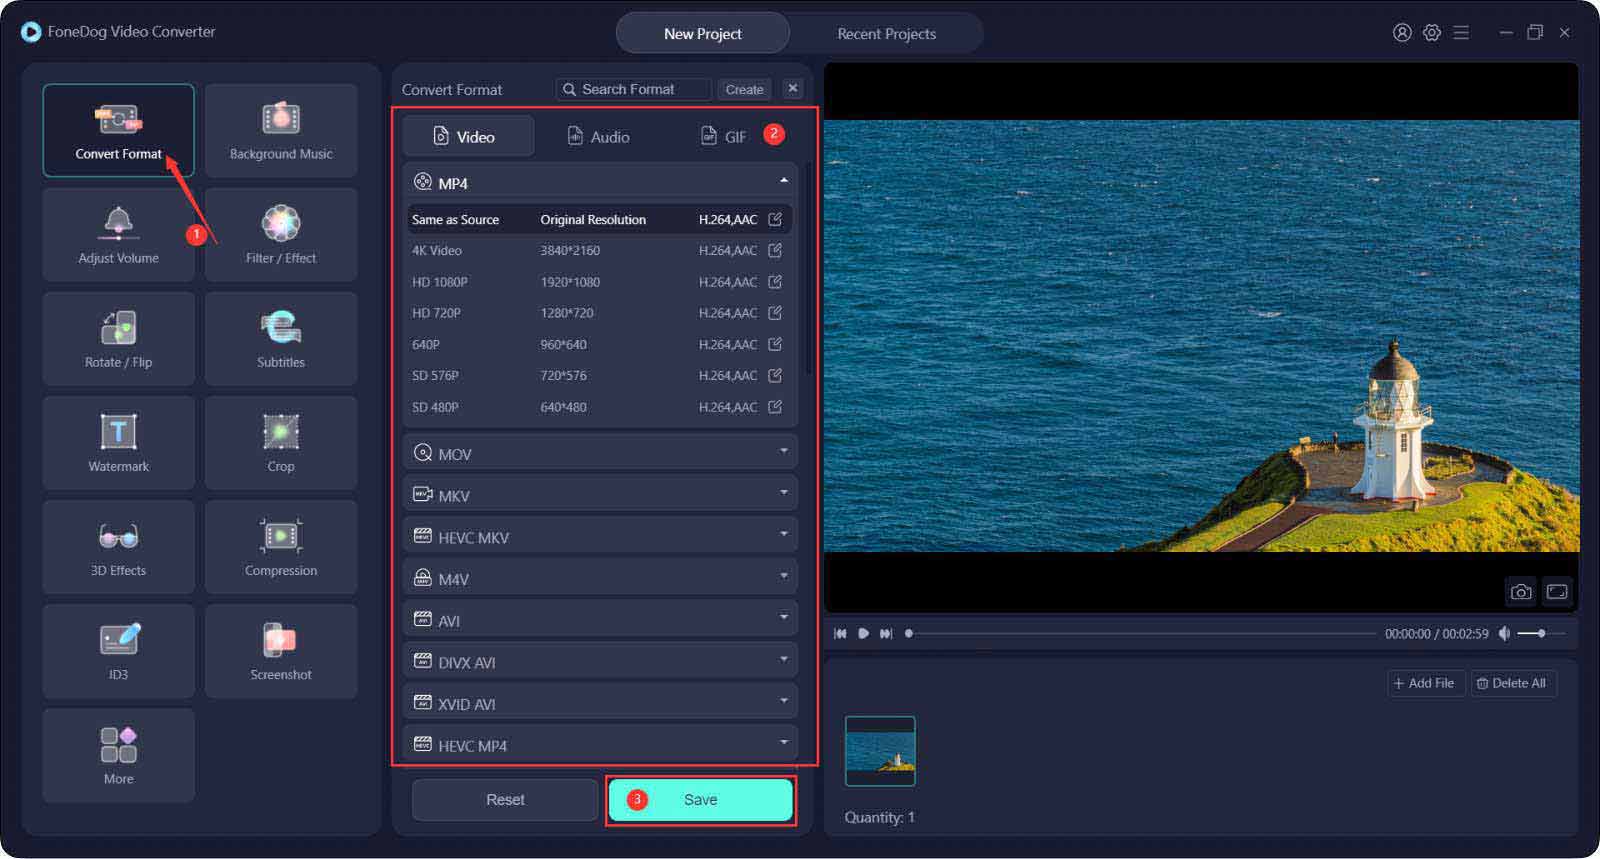 Améliorer la qualité vidéo en ligne à l'aide du convertisseur vidéo FoneDog